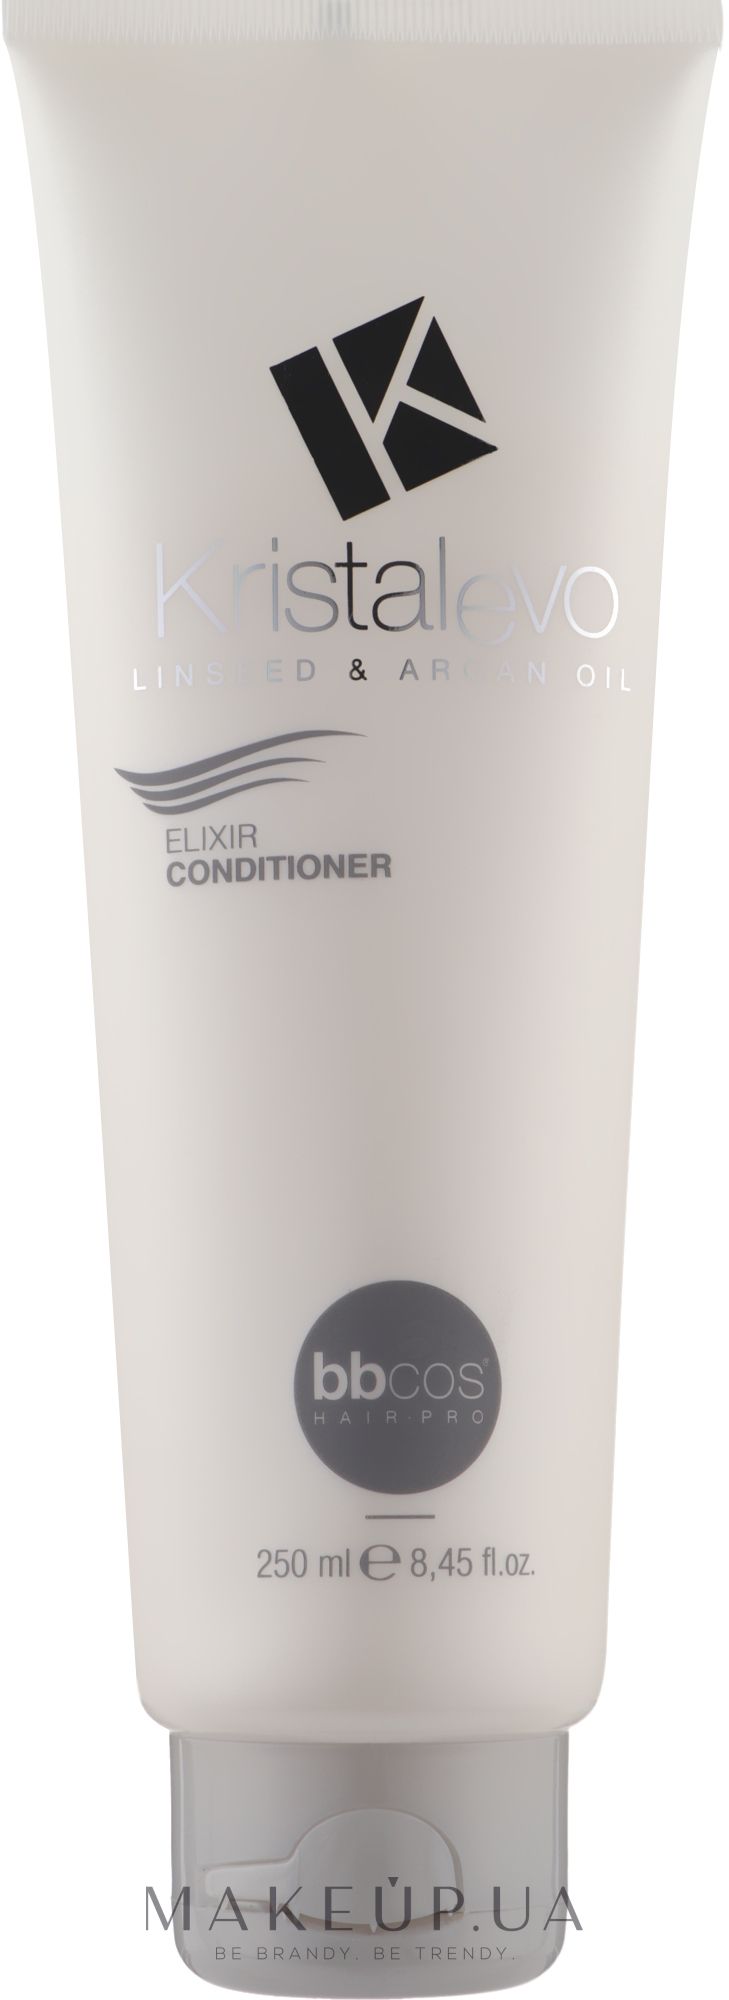 Эликсир-кондиционер для волос - Bbcos Kristal Evo Elixir Conditioner — фото 250ml